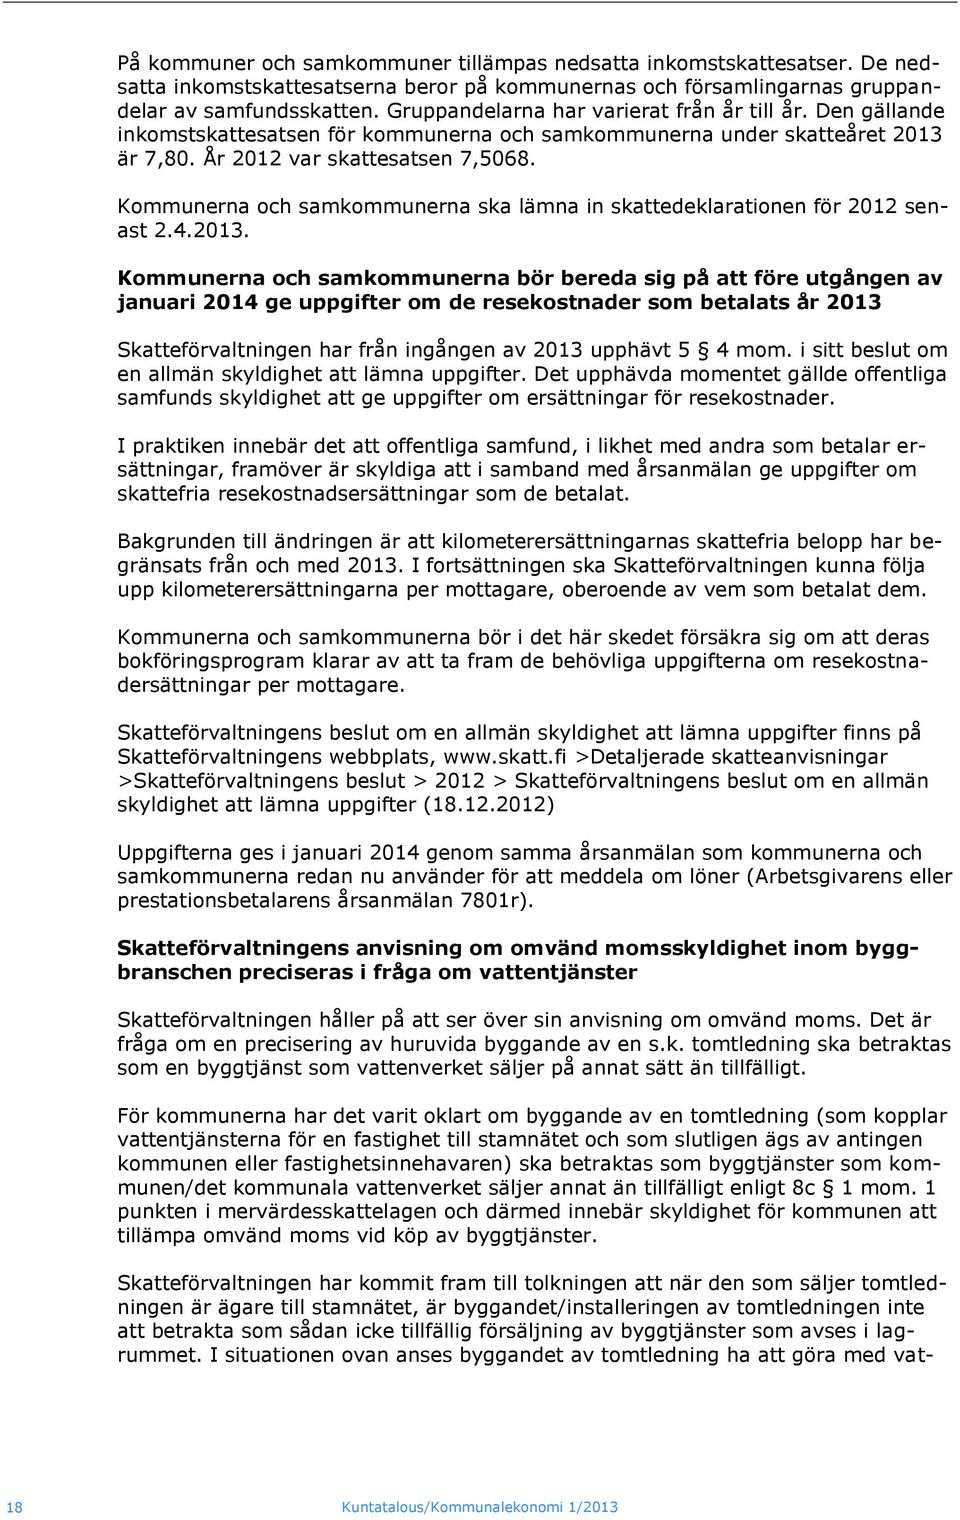 Kommunerna och samkommunerna ska lämna in skattedeklarationen för 2012 senast 2.4.2013.